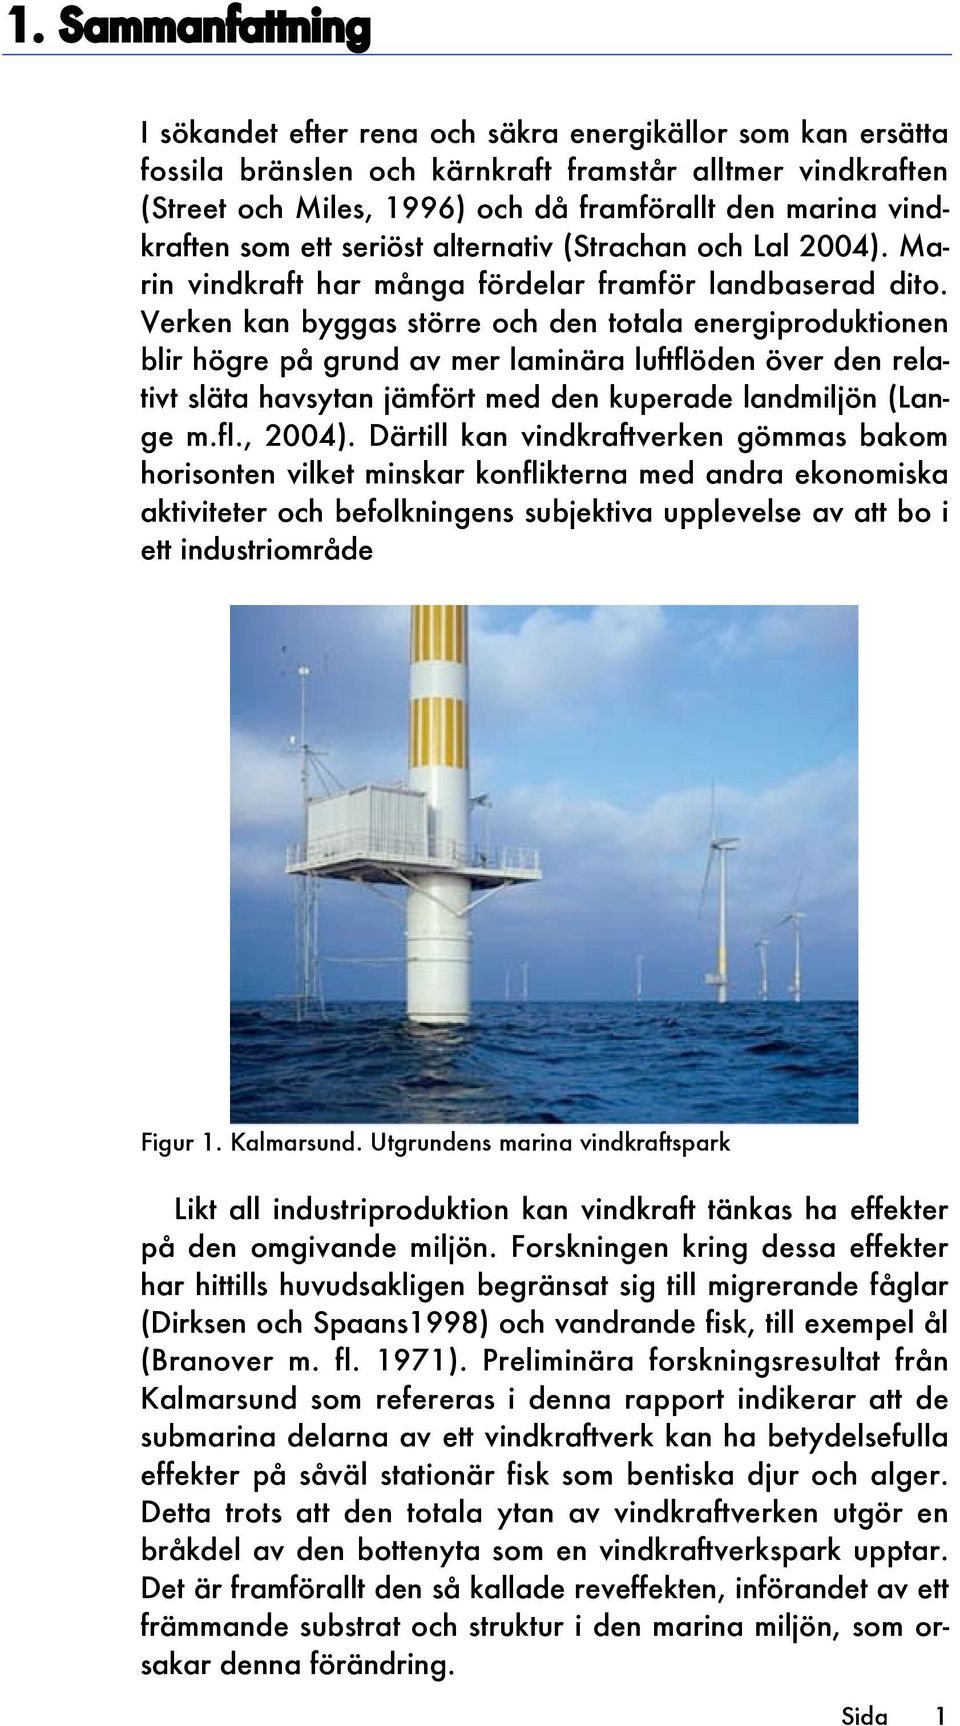 Verken kan byggas större och den totala energiproduktionen blir högre på grund av mer laminära luftflöden över den relativt släta havsytan jämfört med den kuperade landmiljön (Lange m.fl., 2004).